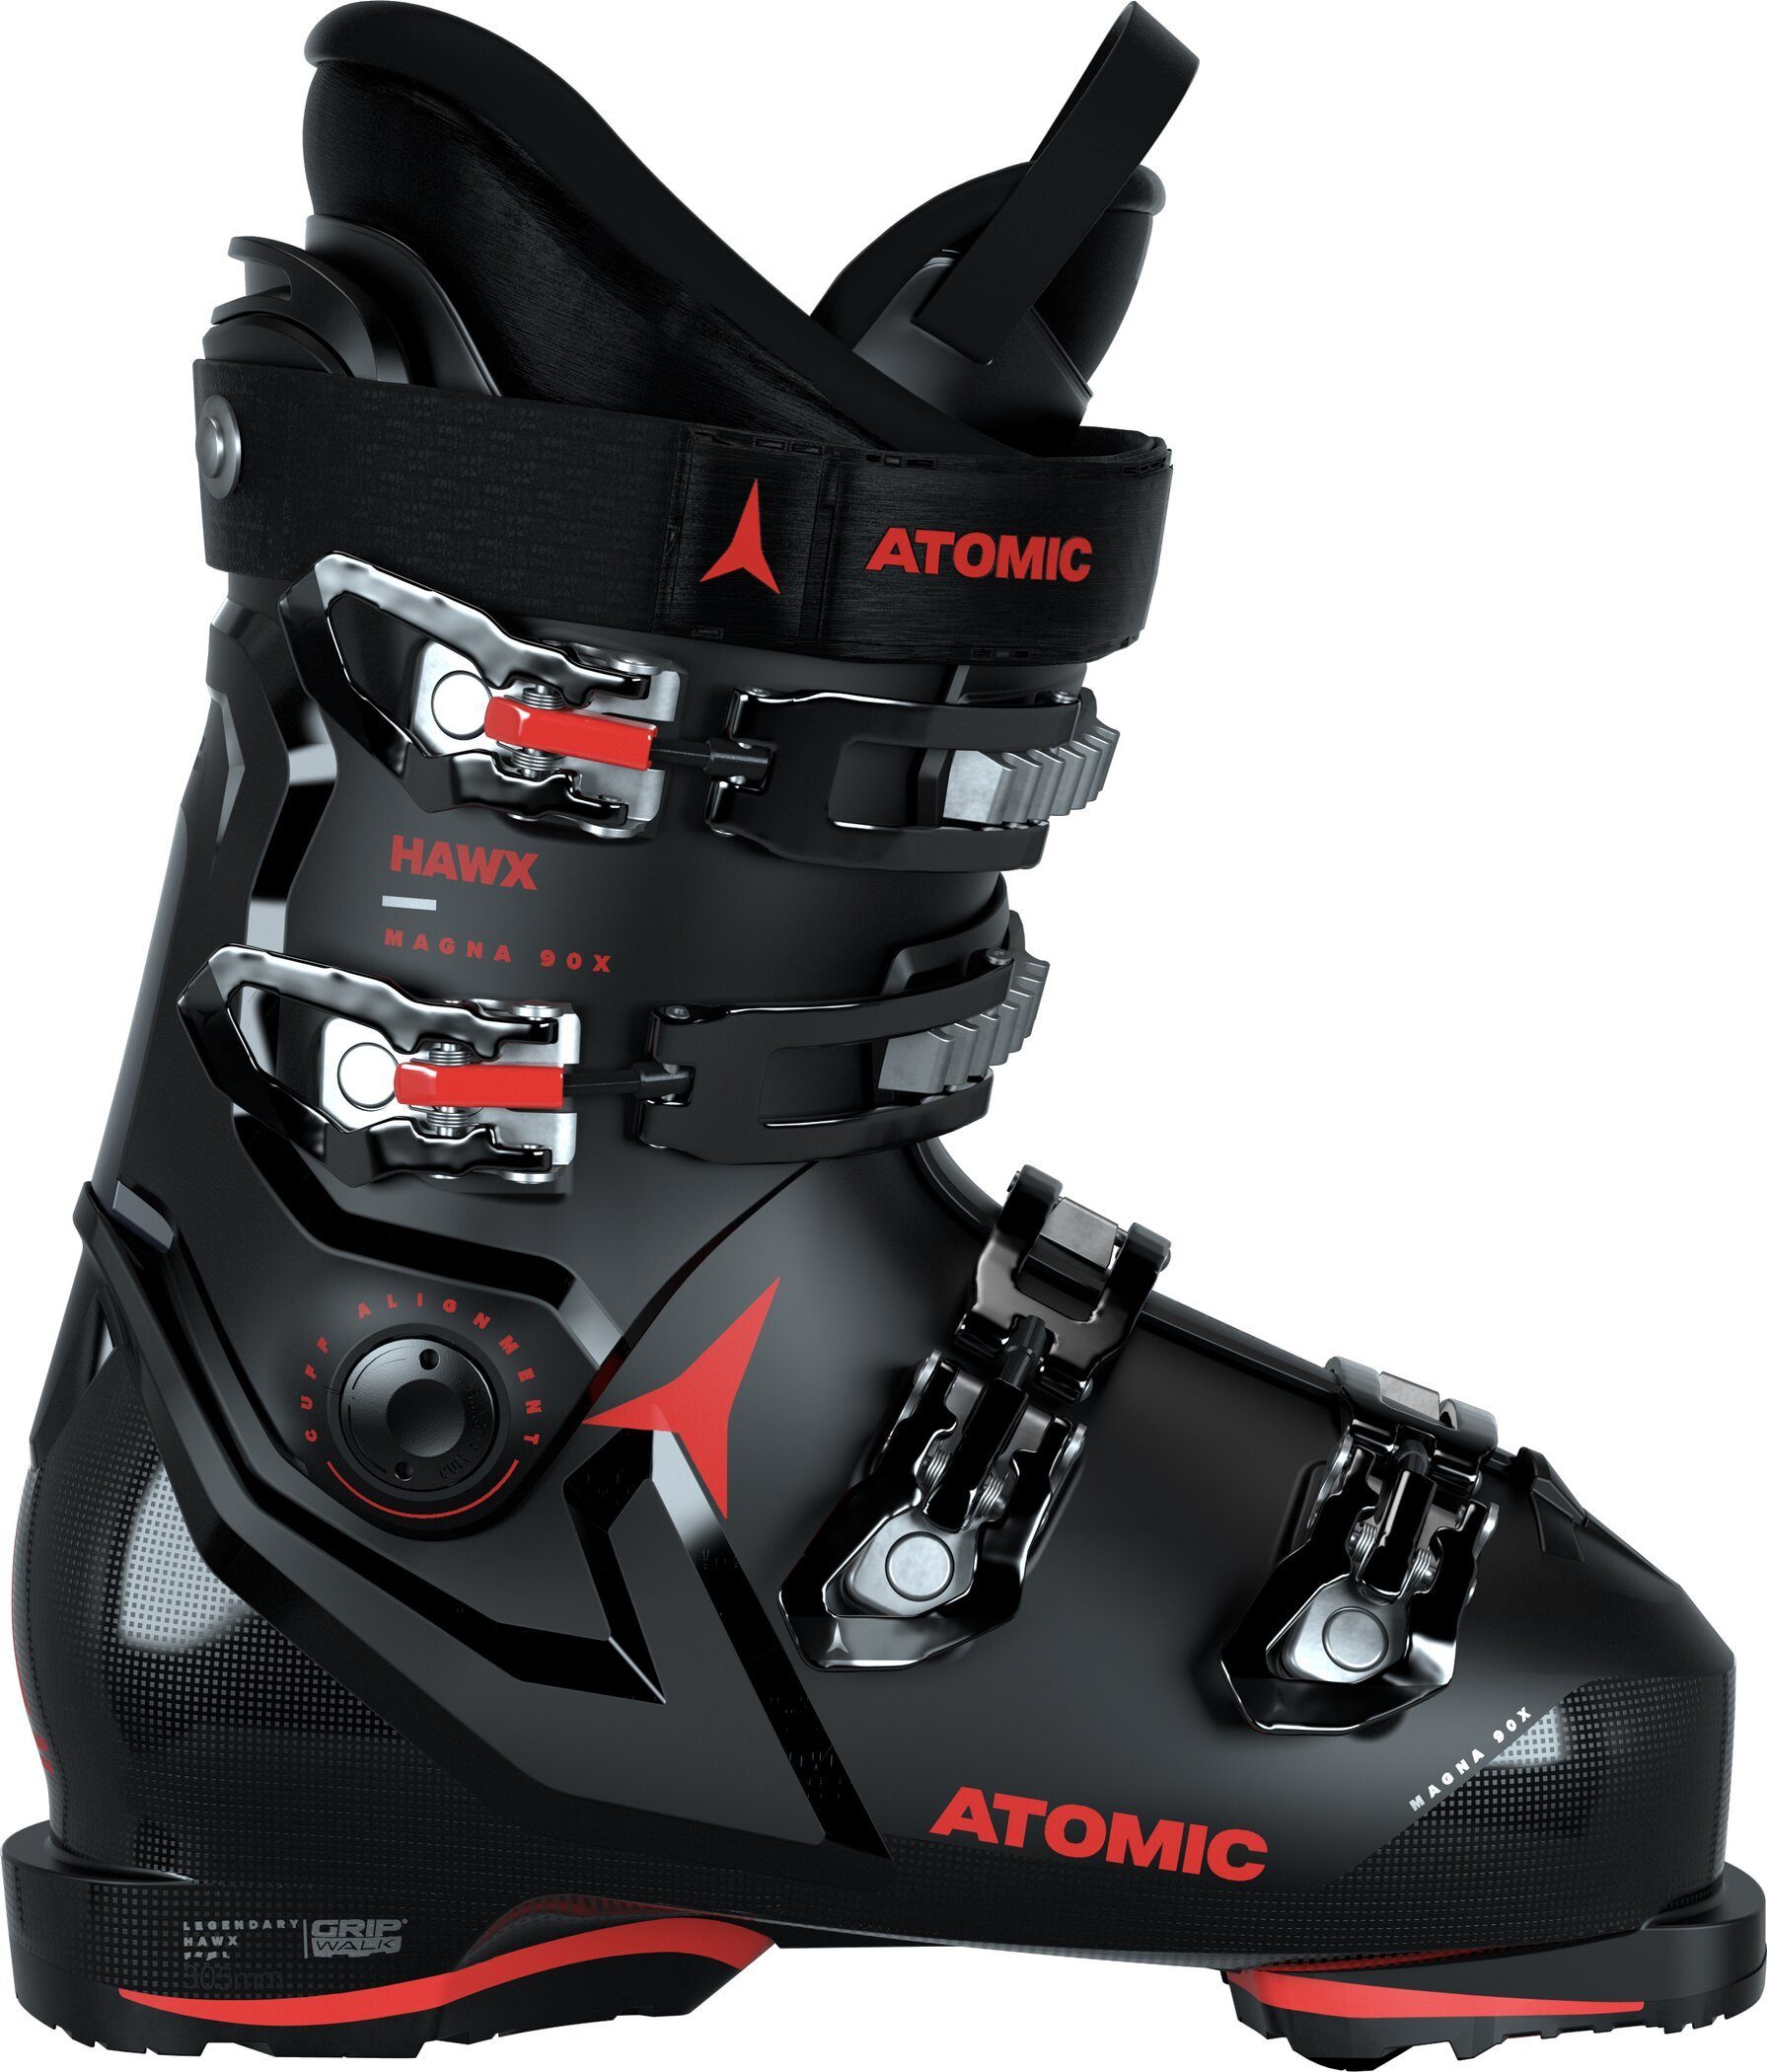 Atomic HAWX MAGNA 90X GW BLAC BLACK/ Skischuh BLACK/RED/ | Skischuhe